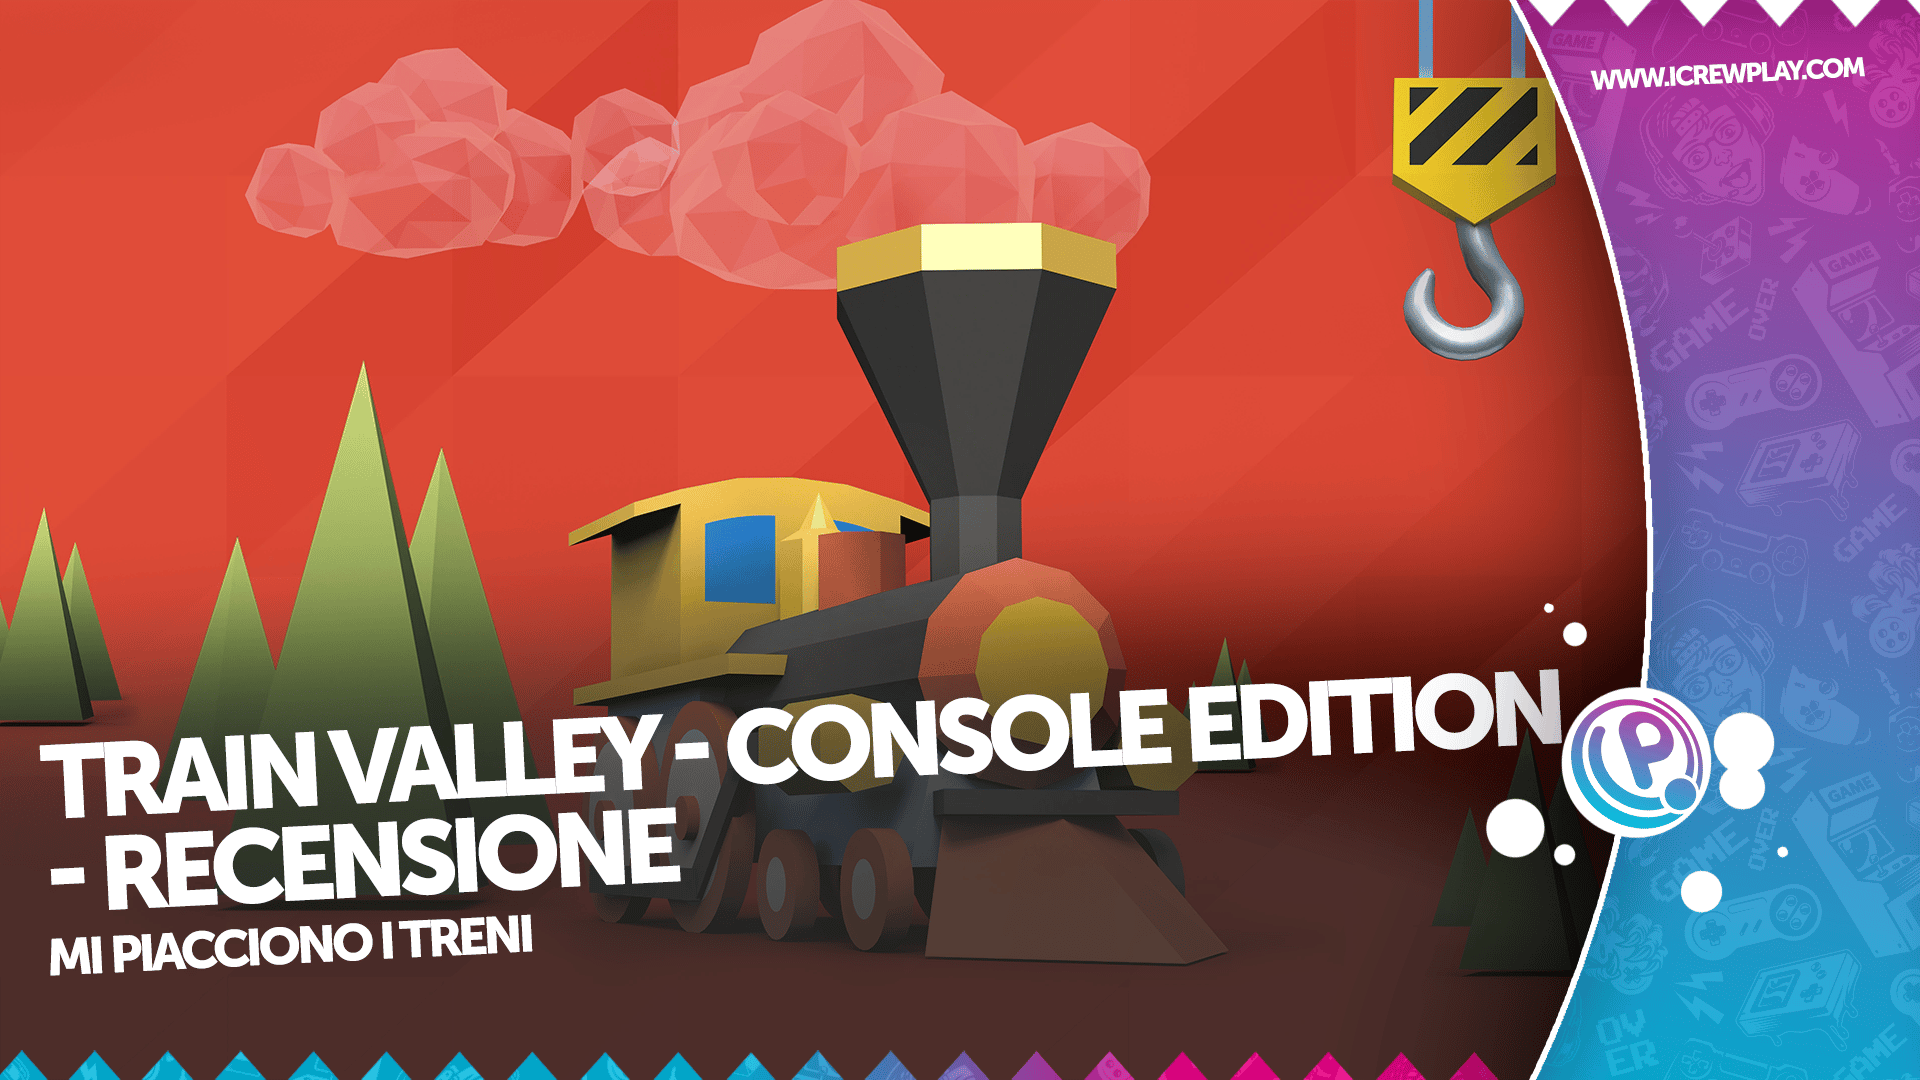 Train Valley: Console Edition - Recensione per Nintendo Switch 16